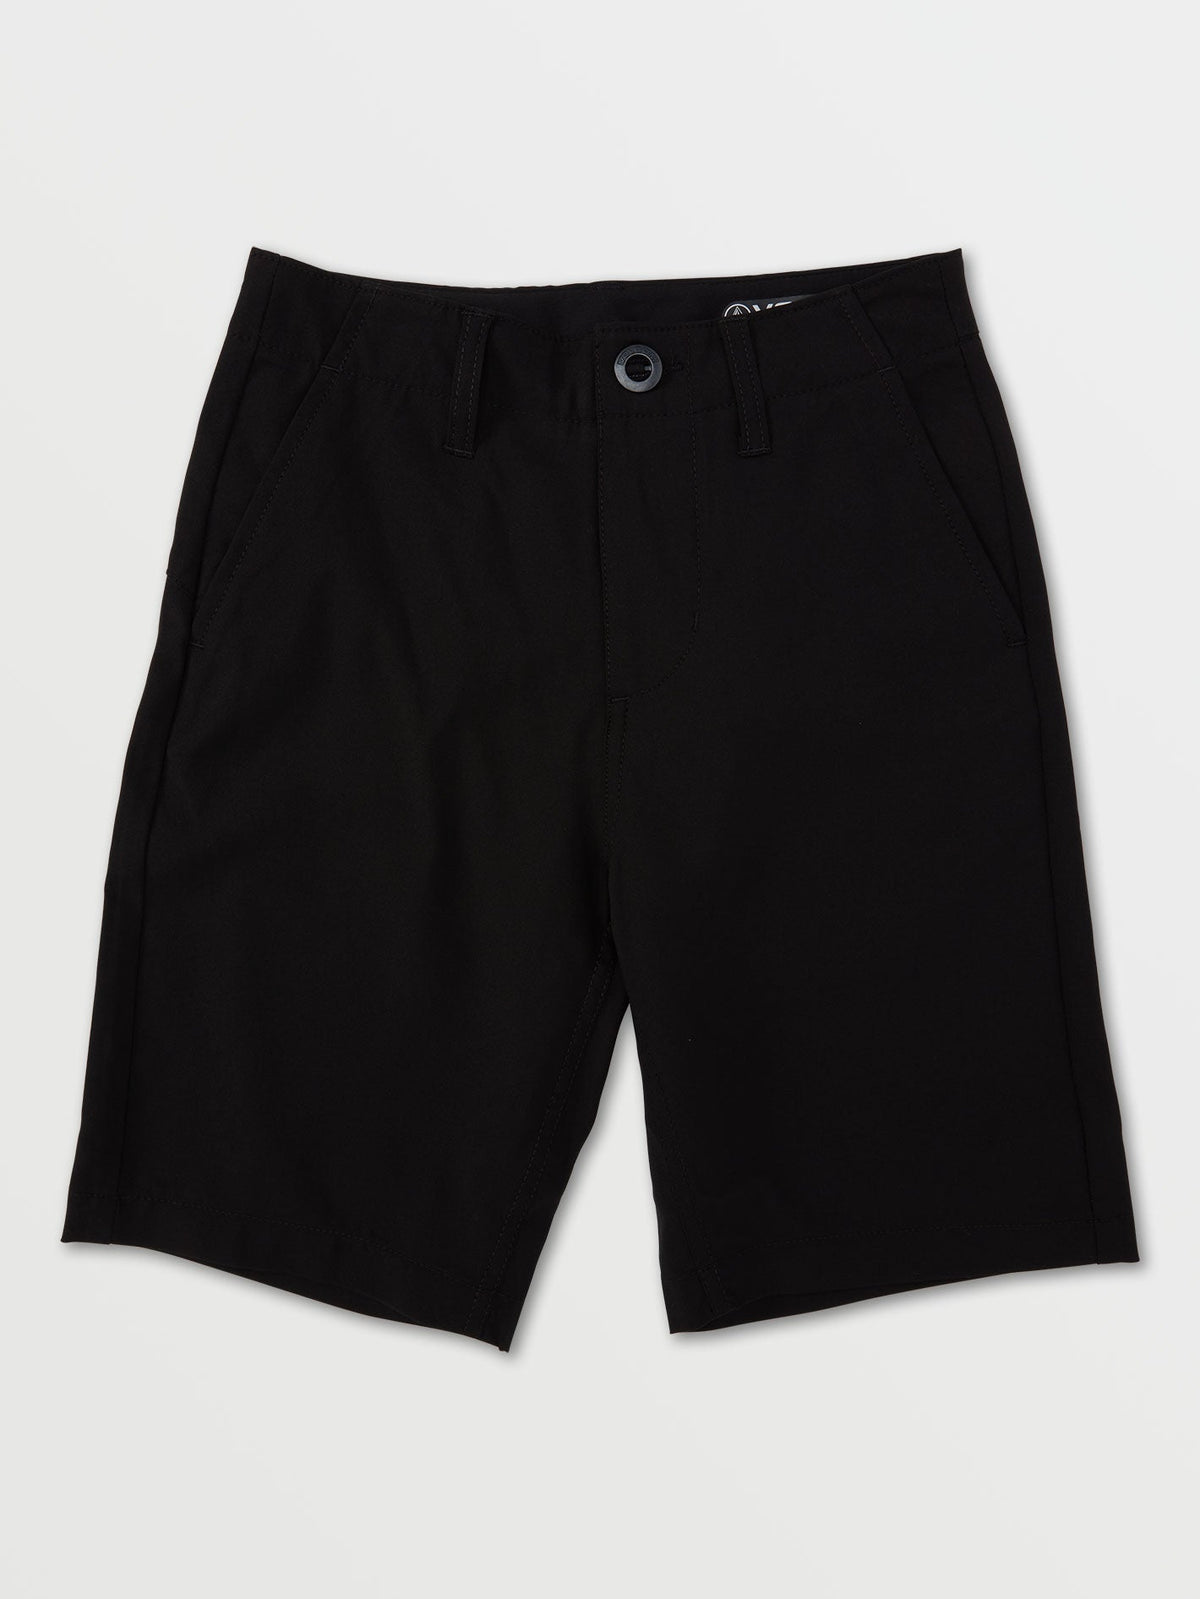 Volcom Kerosene Hybrid Boys Shorts (Age 8-14) Black